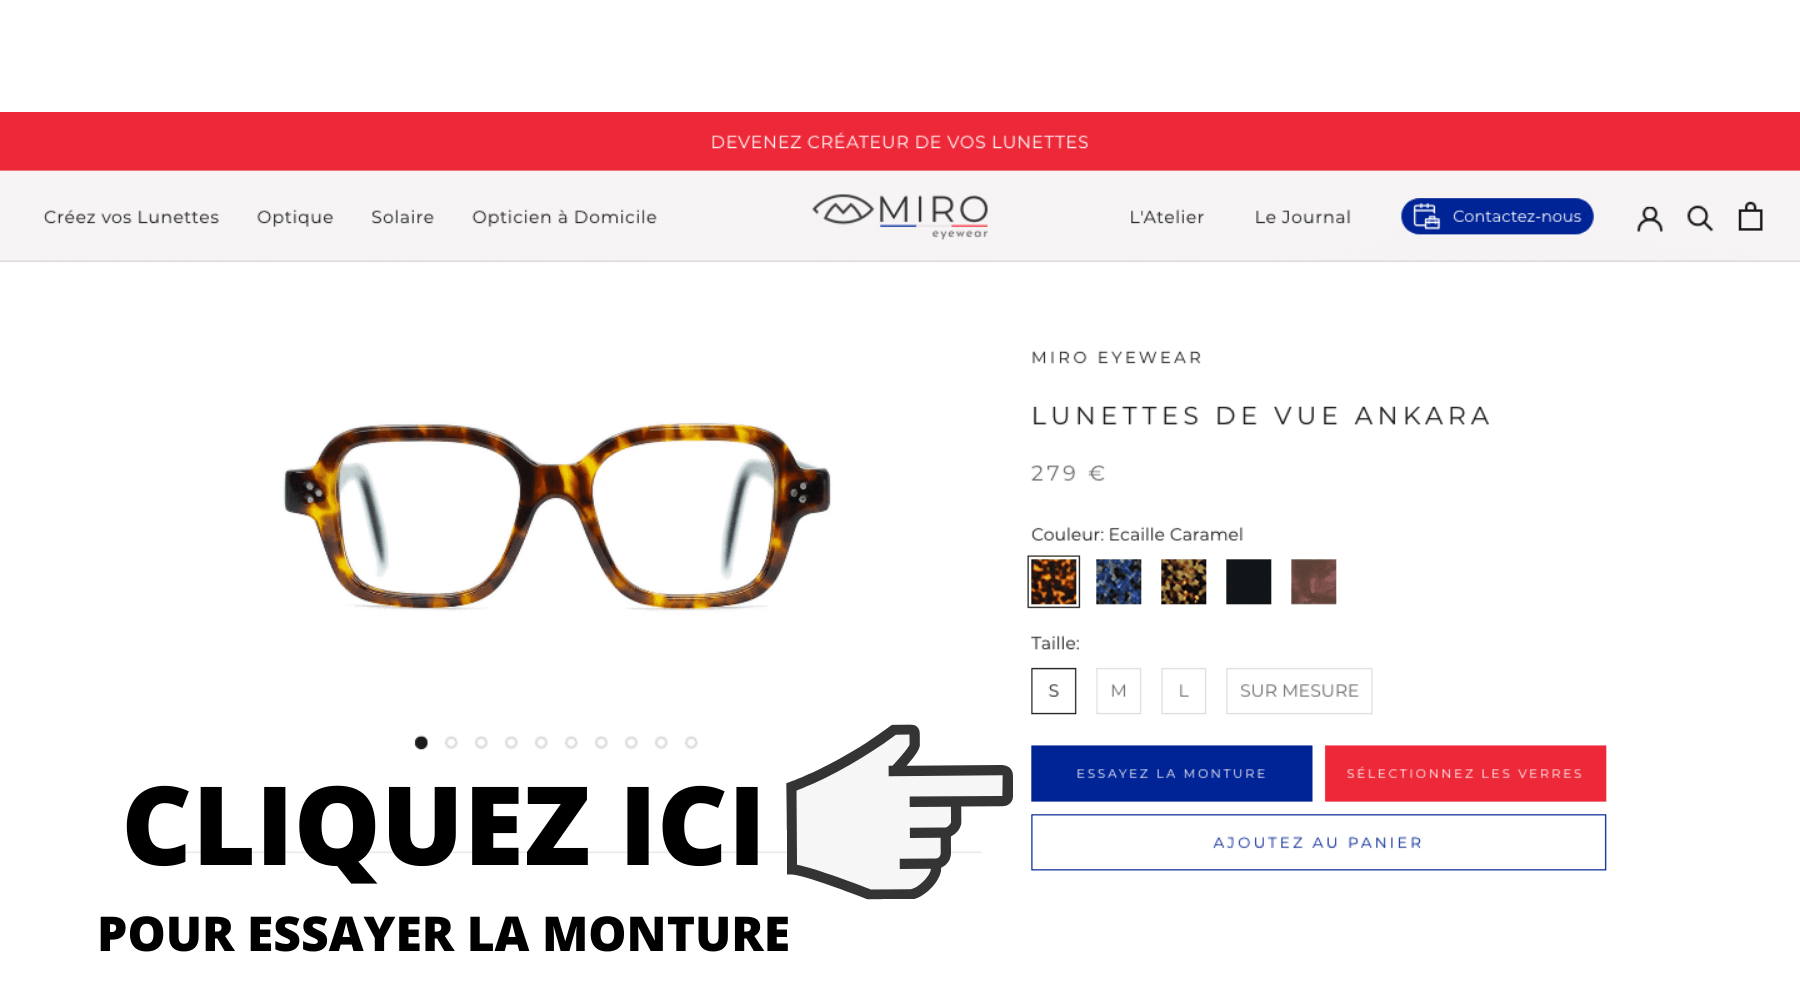 Cliquez ici pour essayer les lunettes virtuellement